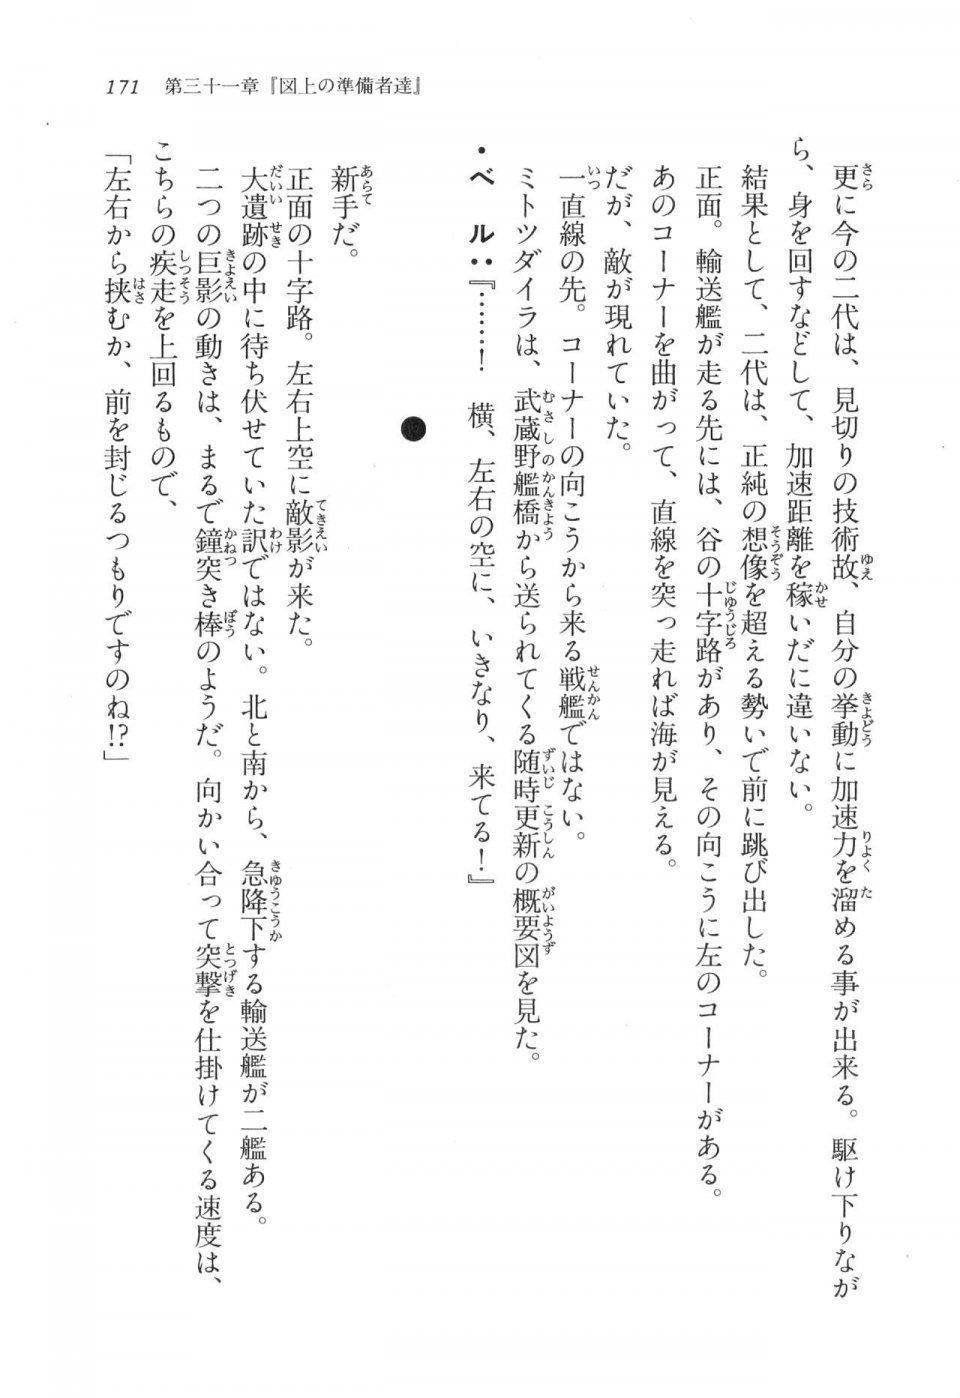 Kyoukai Senjou no Horizon LN Vol 17(7B) - Photo #171